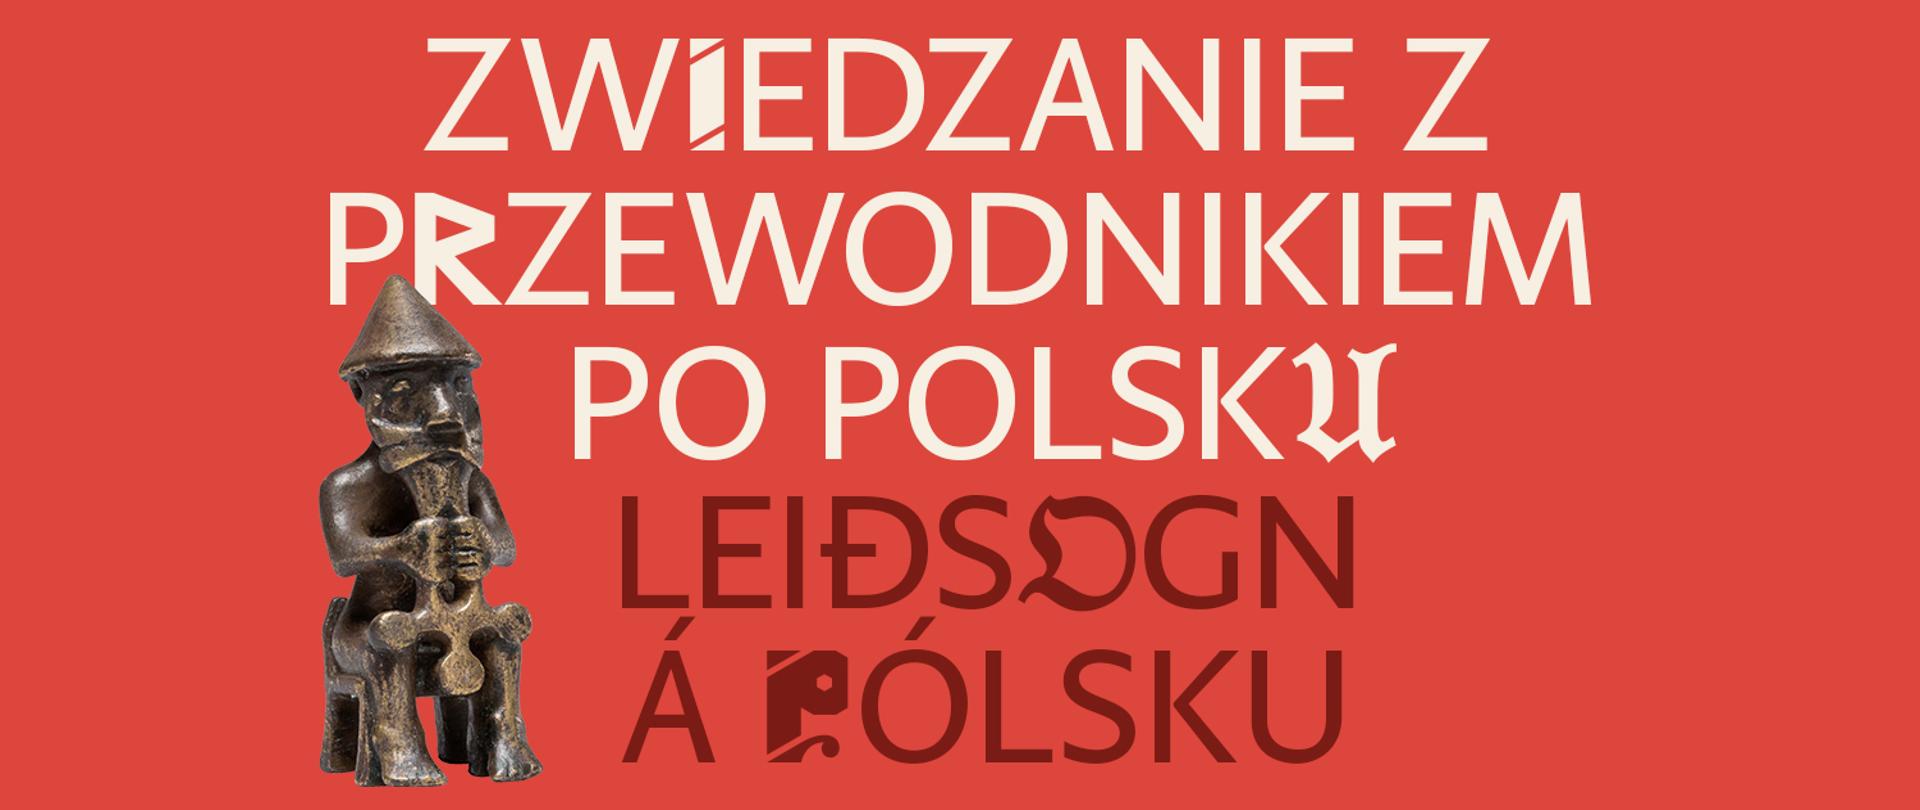 Zwiedzanie z przewodnikiem po polsku